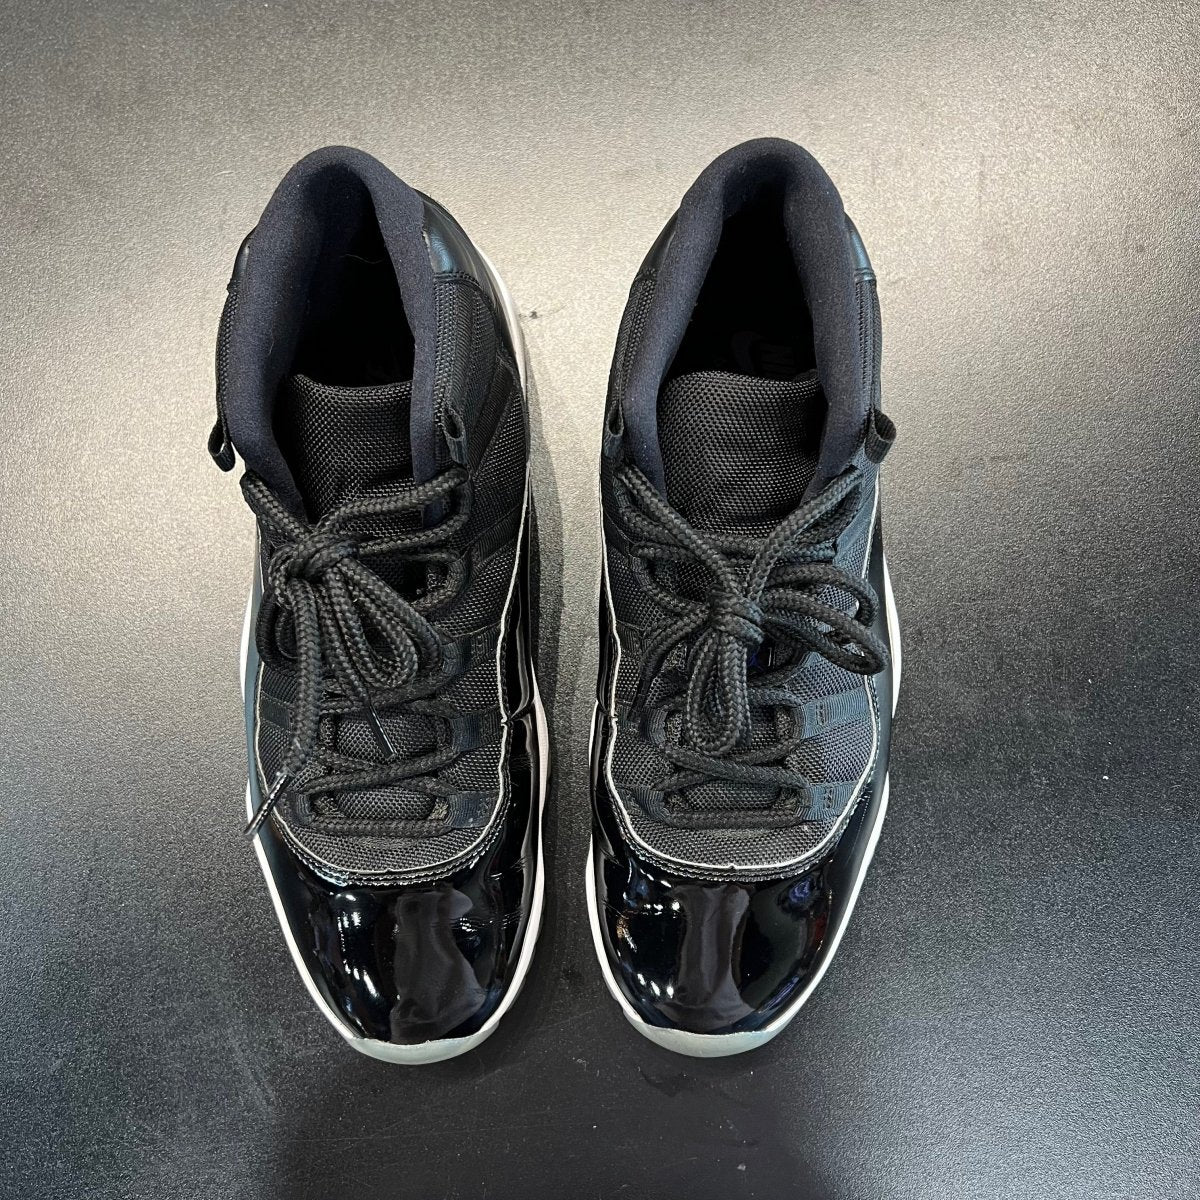 Air Jordan 11 Retro 'Space Jam' 2016 - Gently Enjoyed (Used) - Men 11 - Rep Box - High Sneaker - Jawns on Fire Sneakers & Streetwear